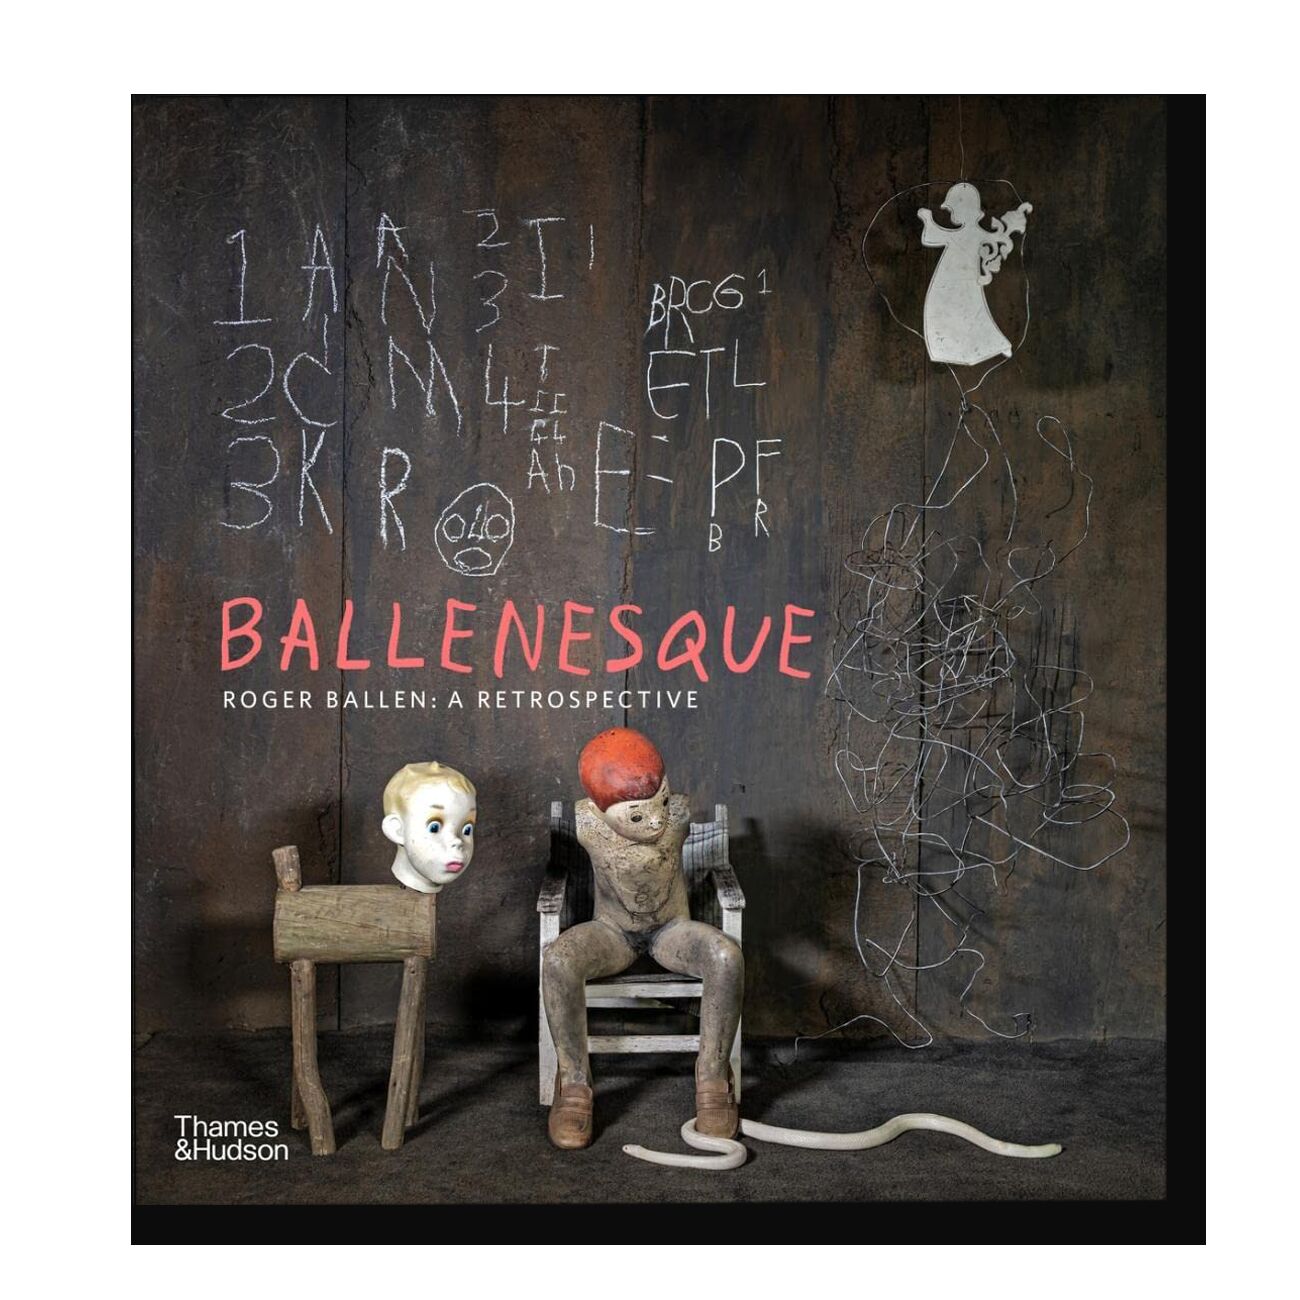 Ballenesque Roger Ballen: A Retrospective